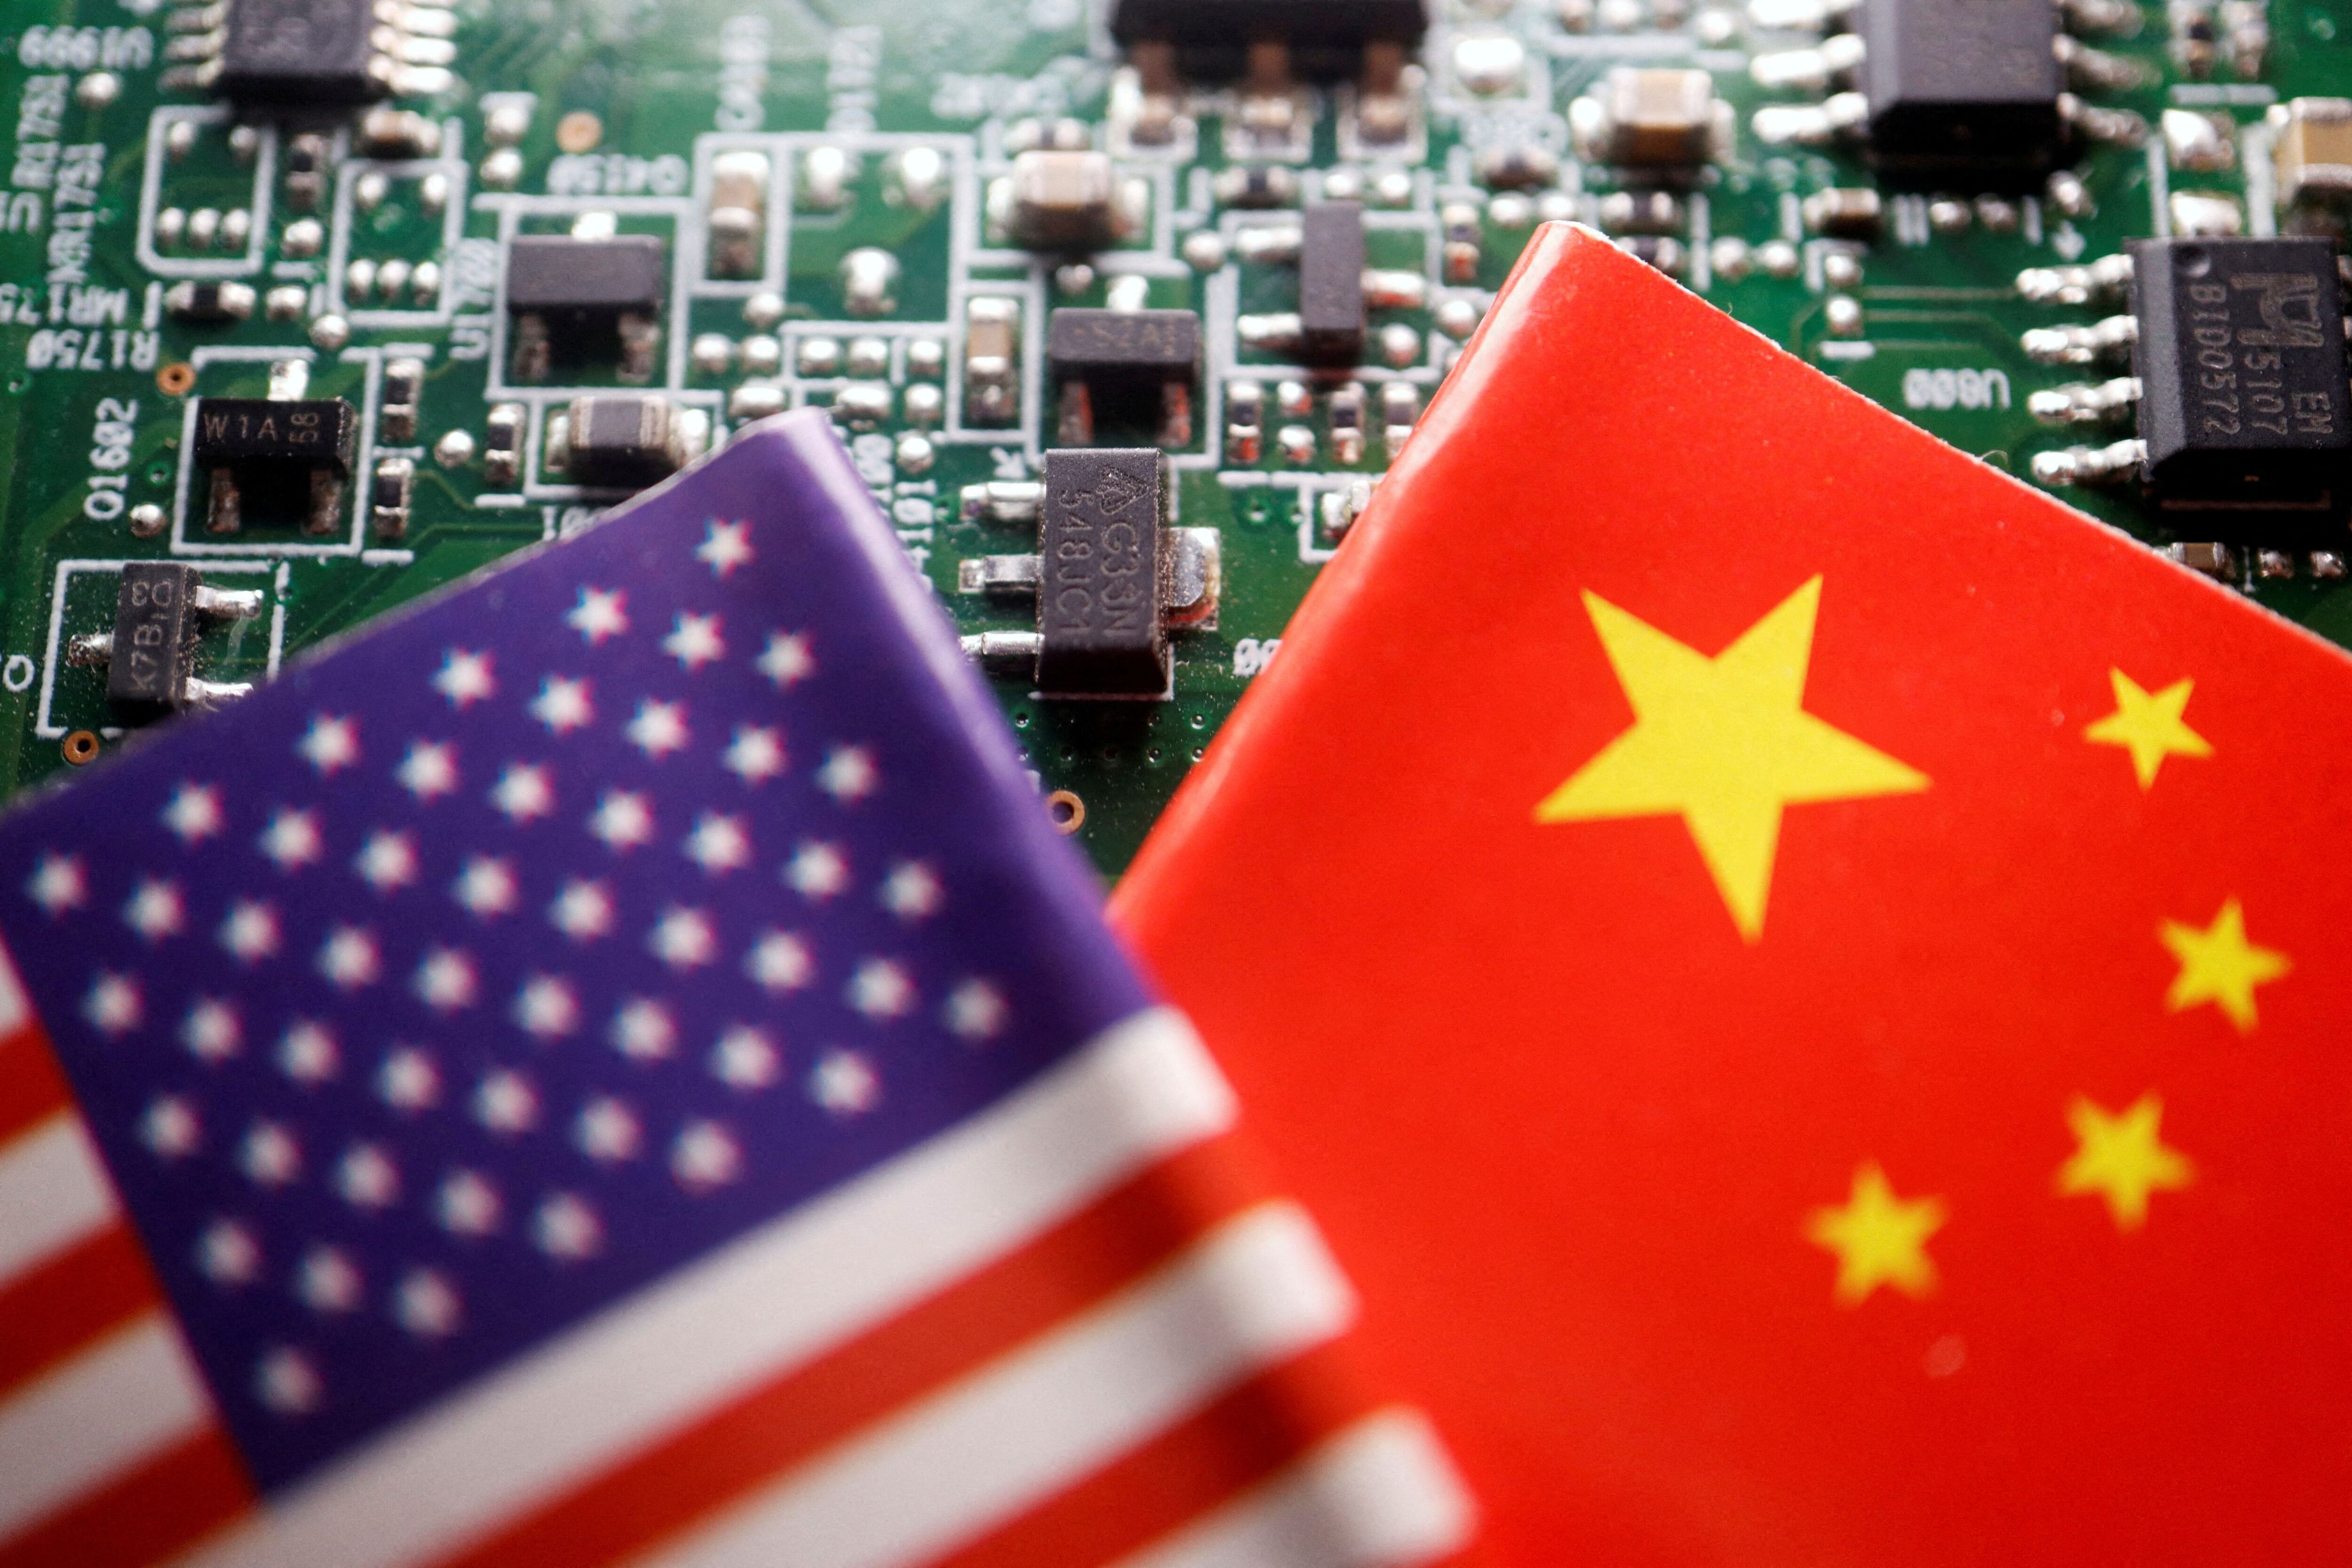 Biden firmó este miércoles una orden ejecutiva que impone límites a las inversiones estadounidenses en ciertas empresas tecnológicas chinas, una medida que podría tensar aún más las relaciones con el régimen de Xi Jinping. (REUTERS)